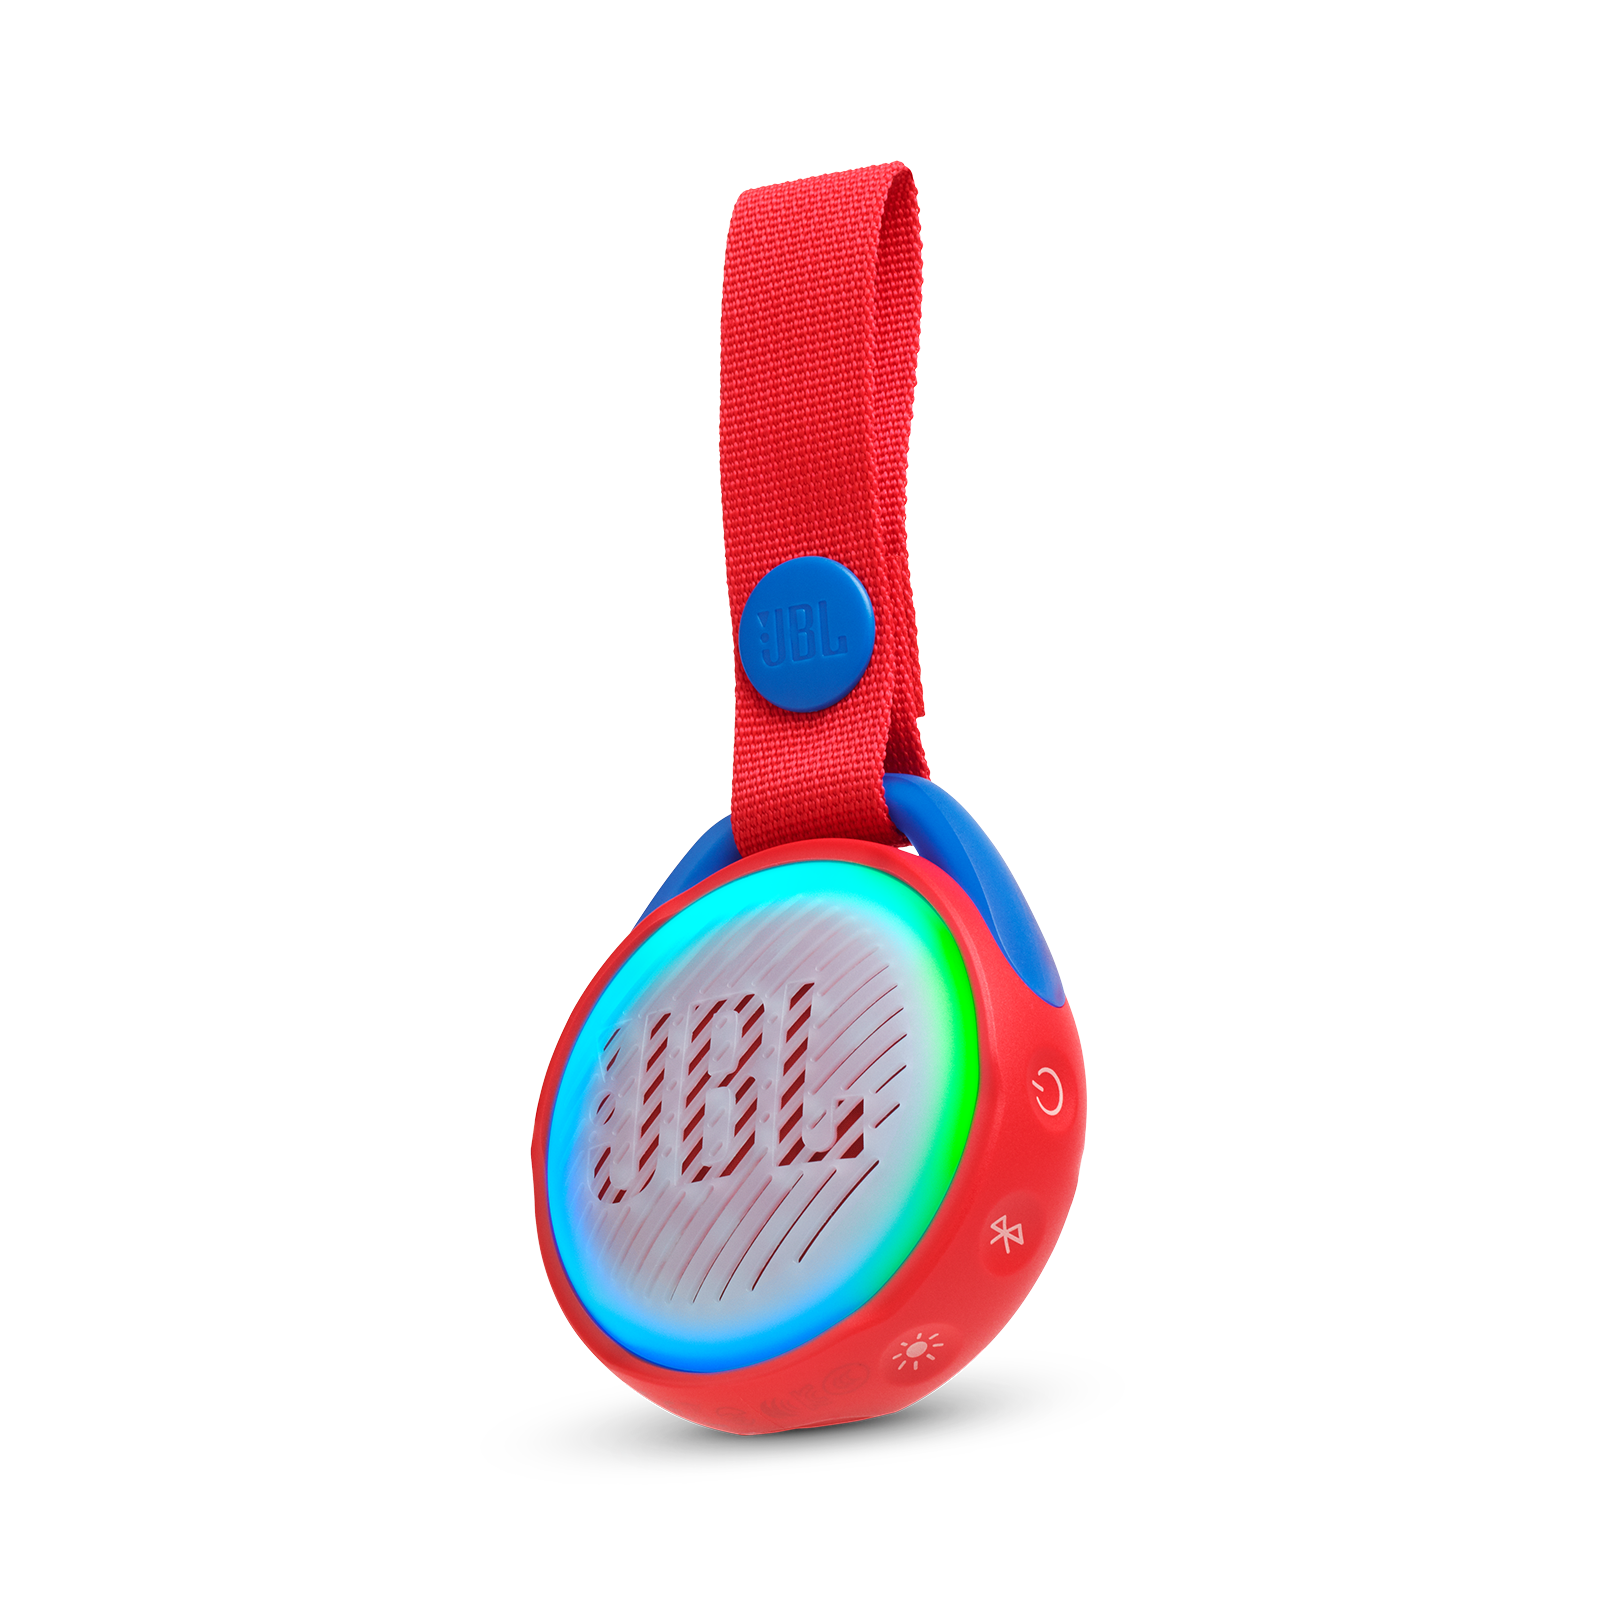 JBL JR Pop - Red - Portable speaker for kids - Hero